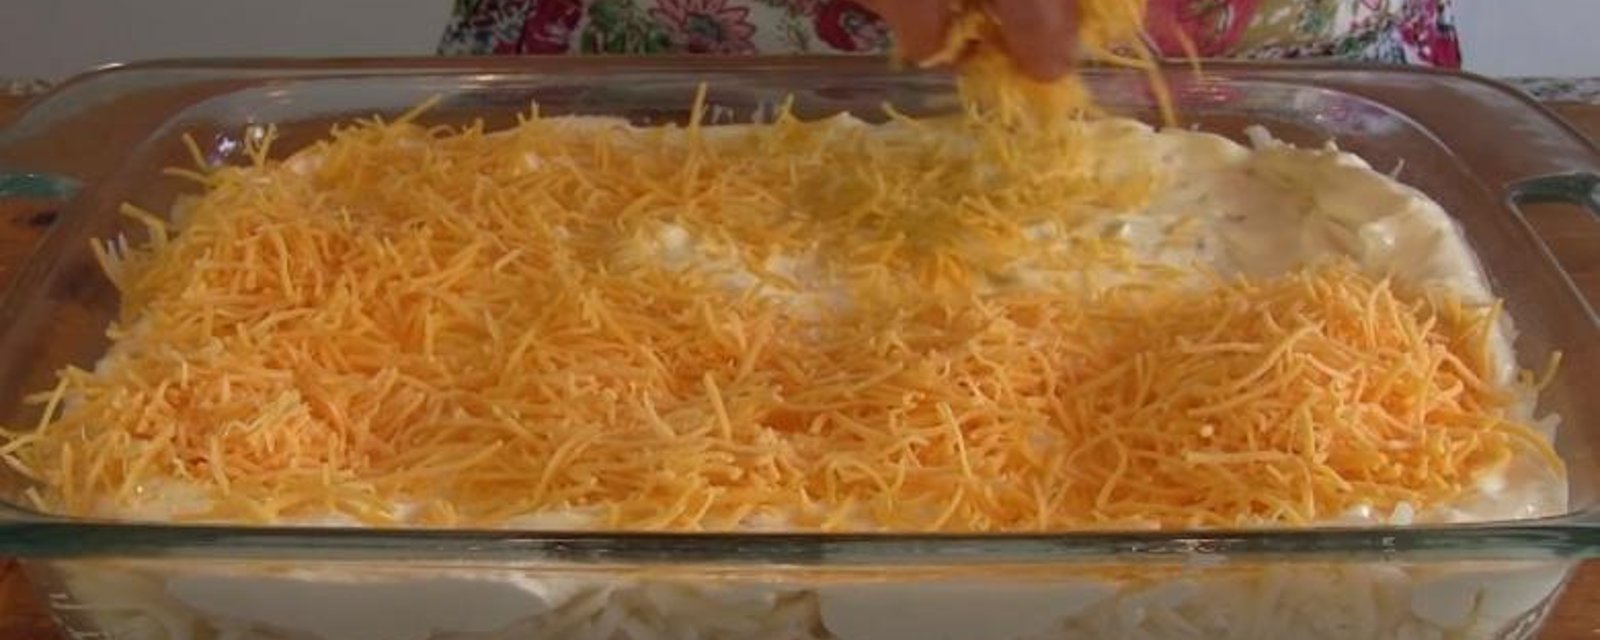 Saupoudrez de fromage vos pommes de terre hachées et recréez une recette secrète PARFAITE!